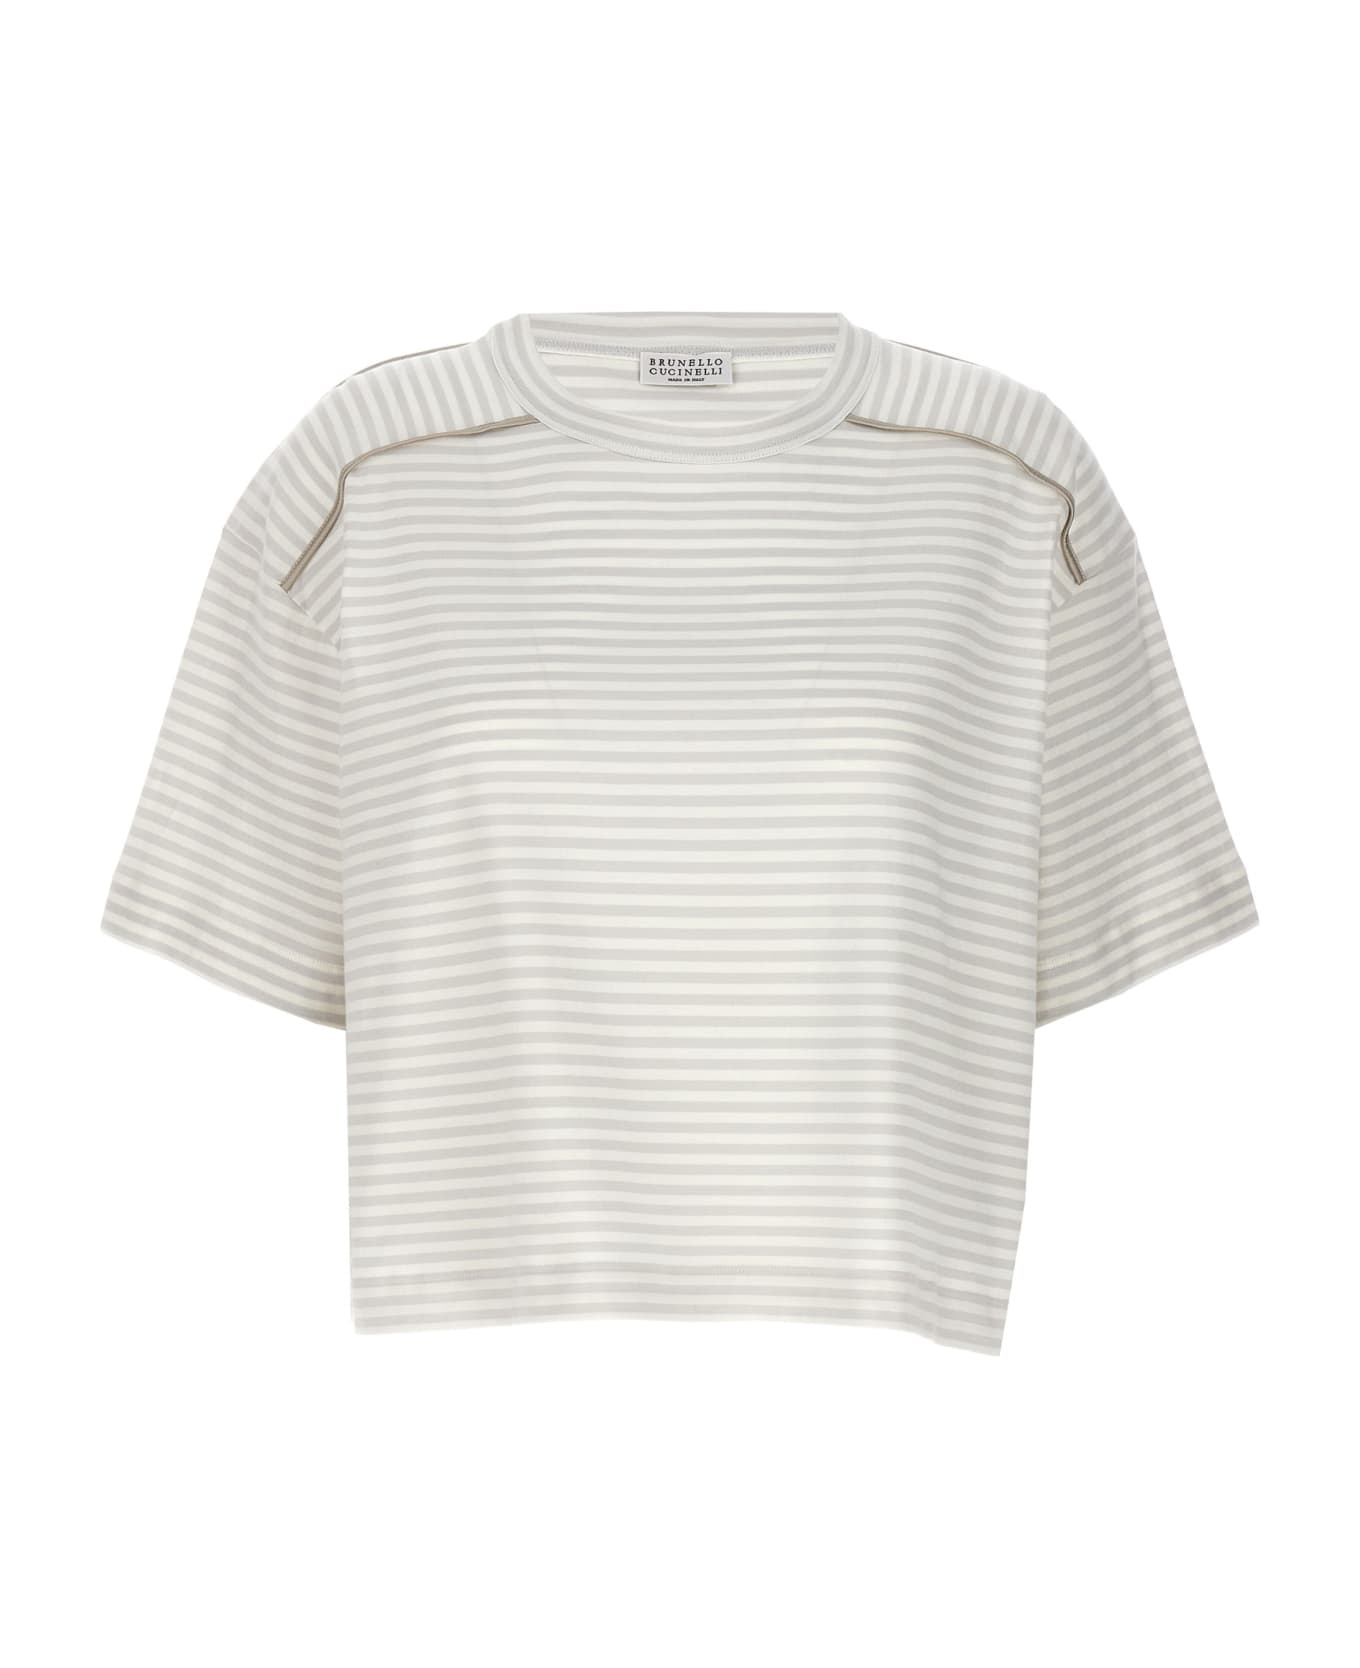 Brunello Cucinelli Striped T-shirt - Multicolor